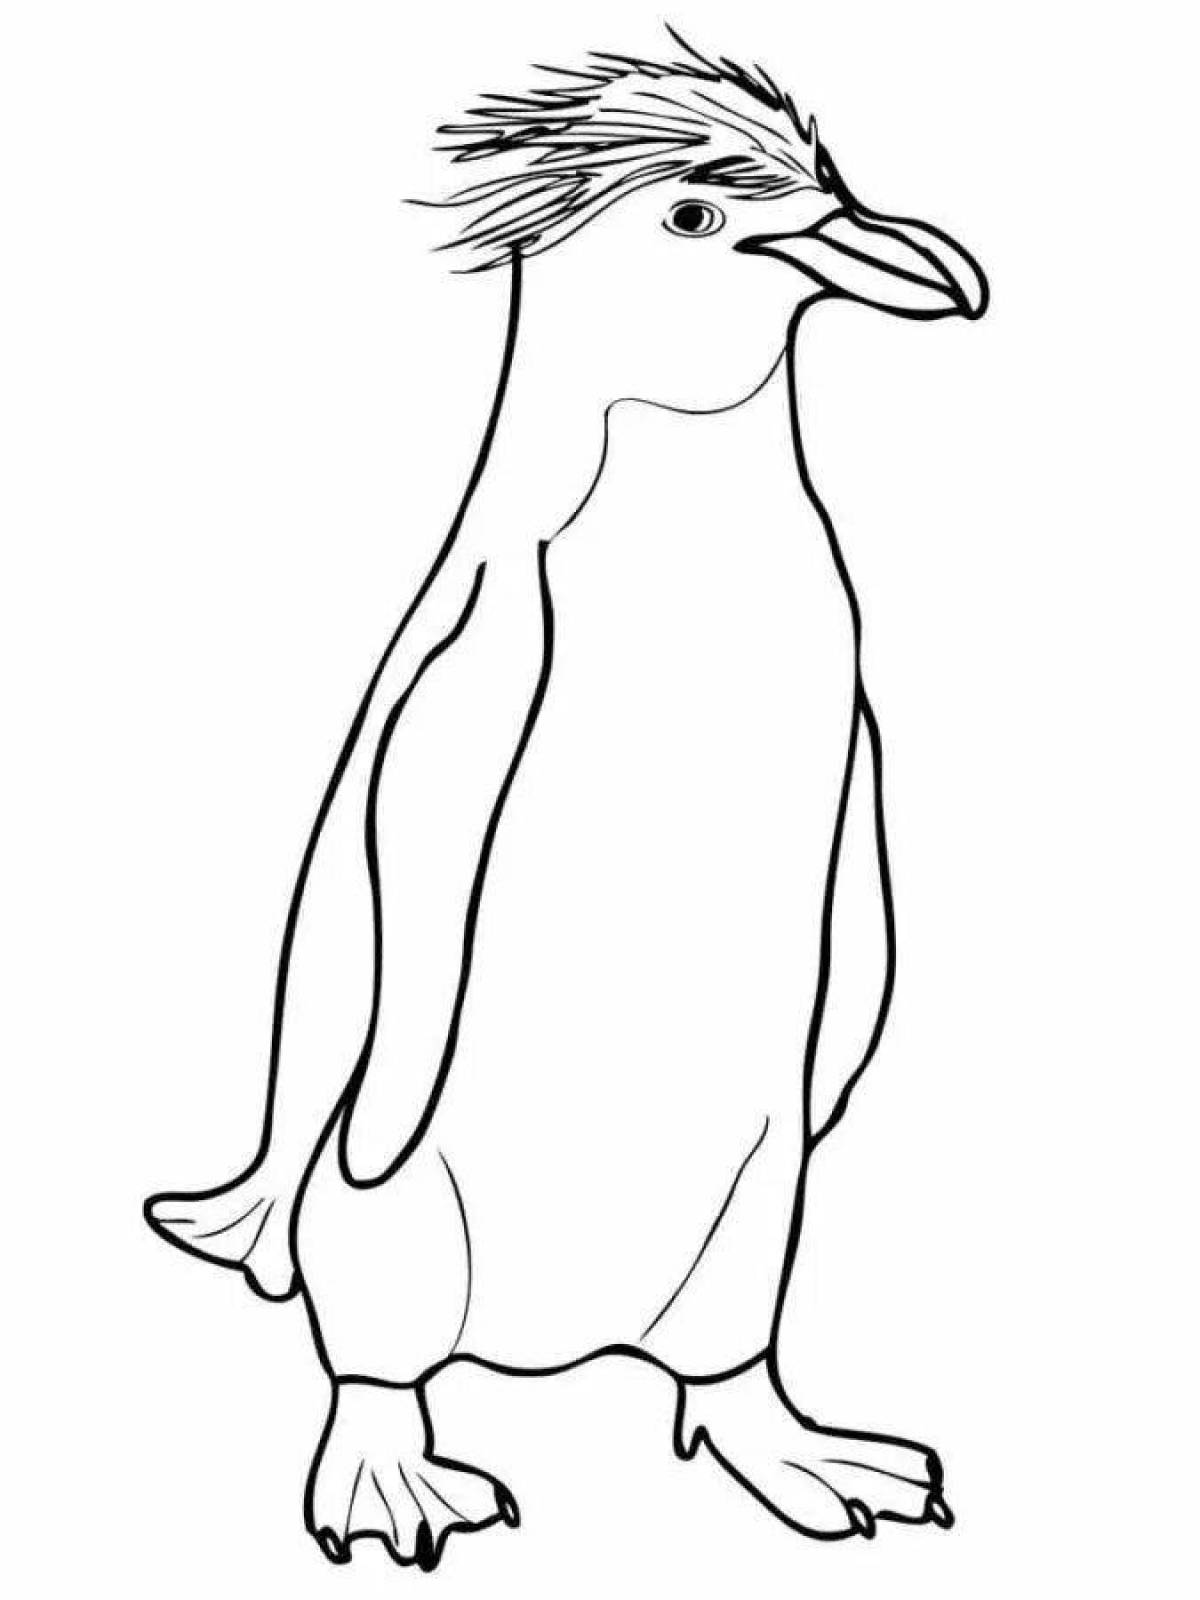 Анимированная страница раскраски императорских пингвинов